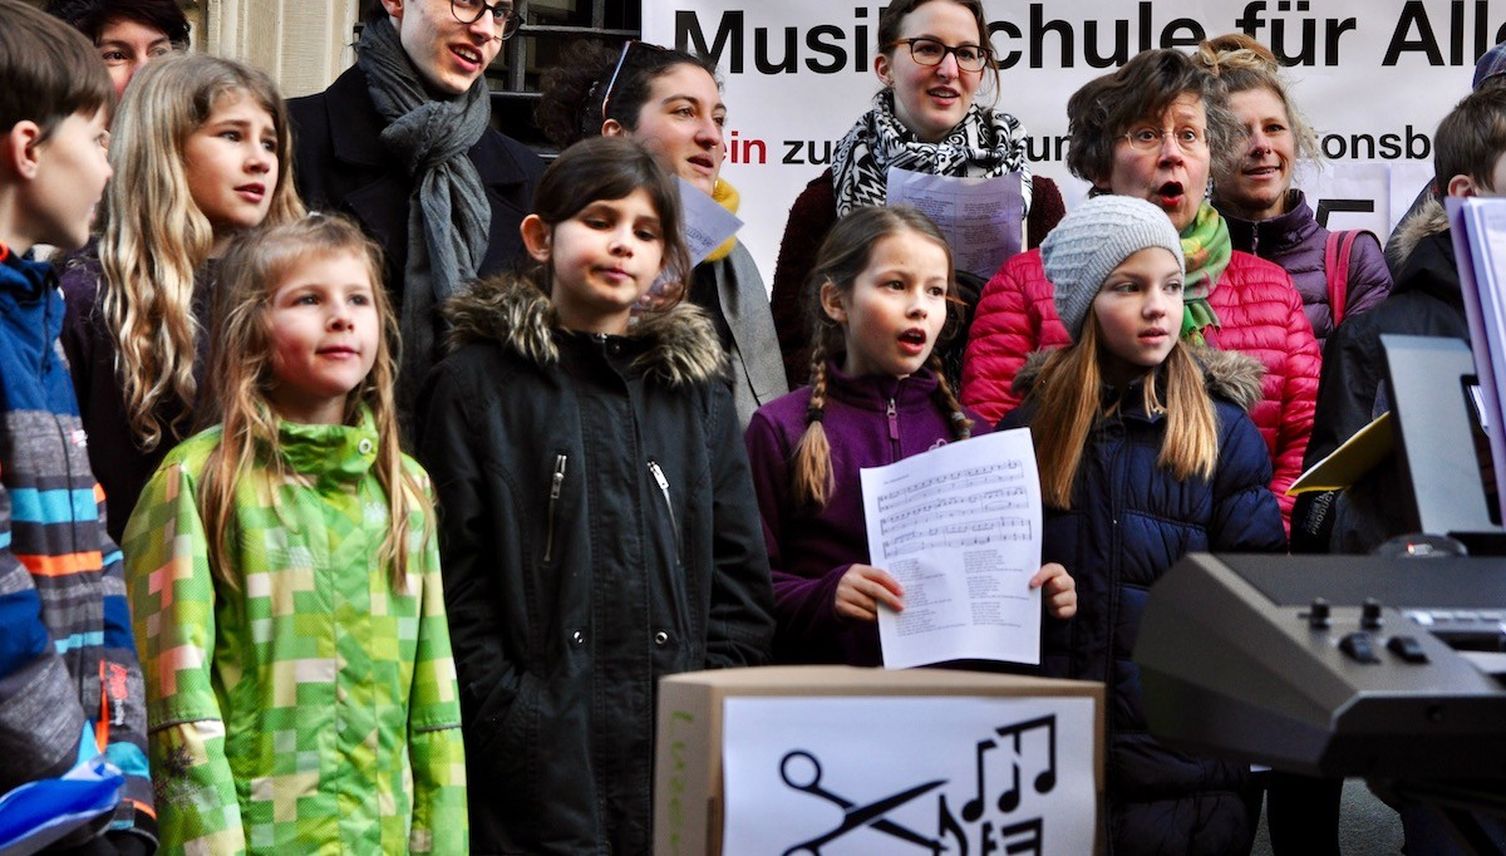 Über 30’000 Unterschriften gegen den Abbau bei Musikschulen